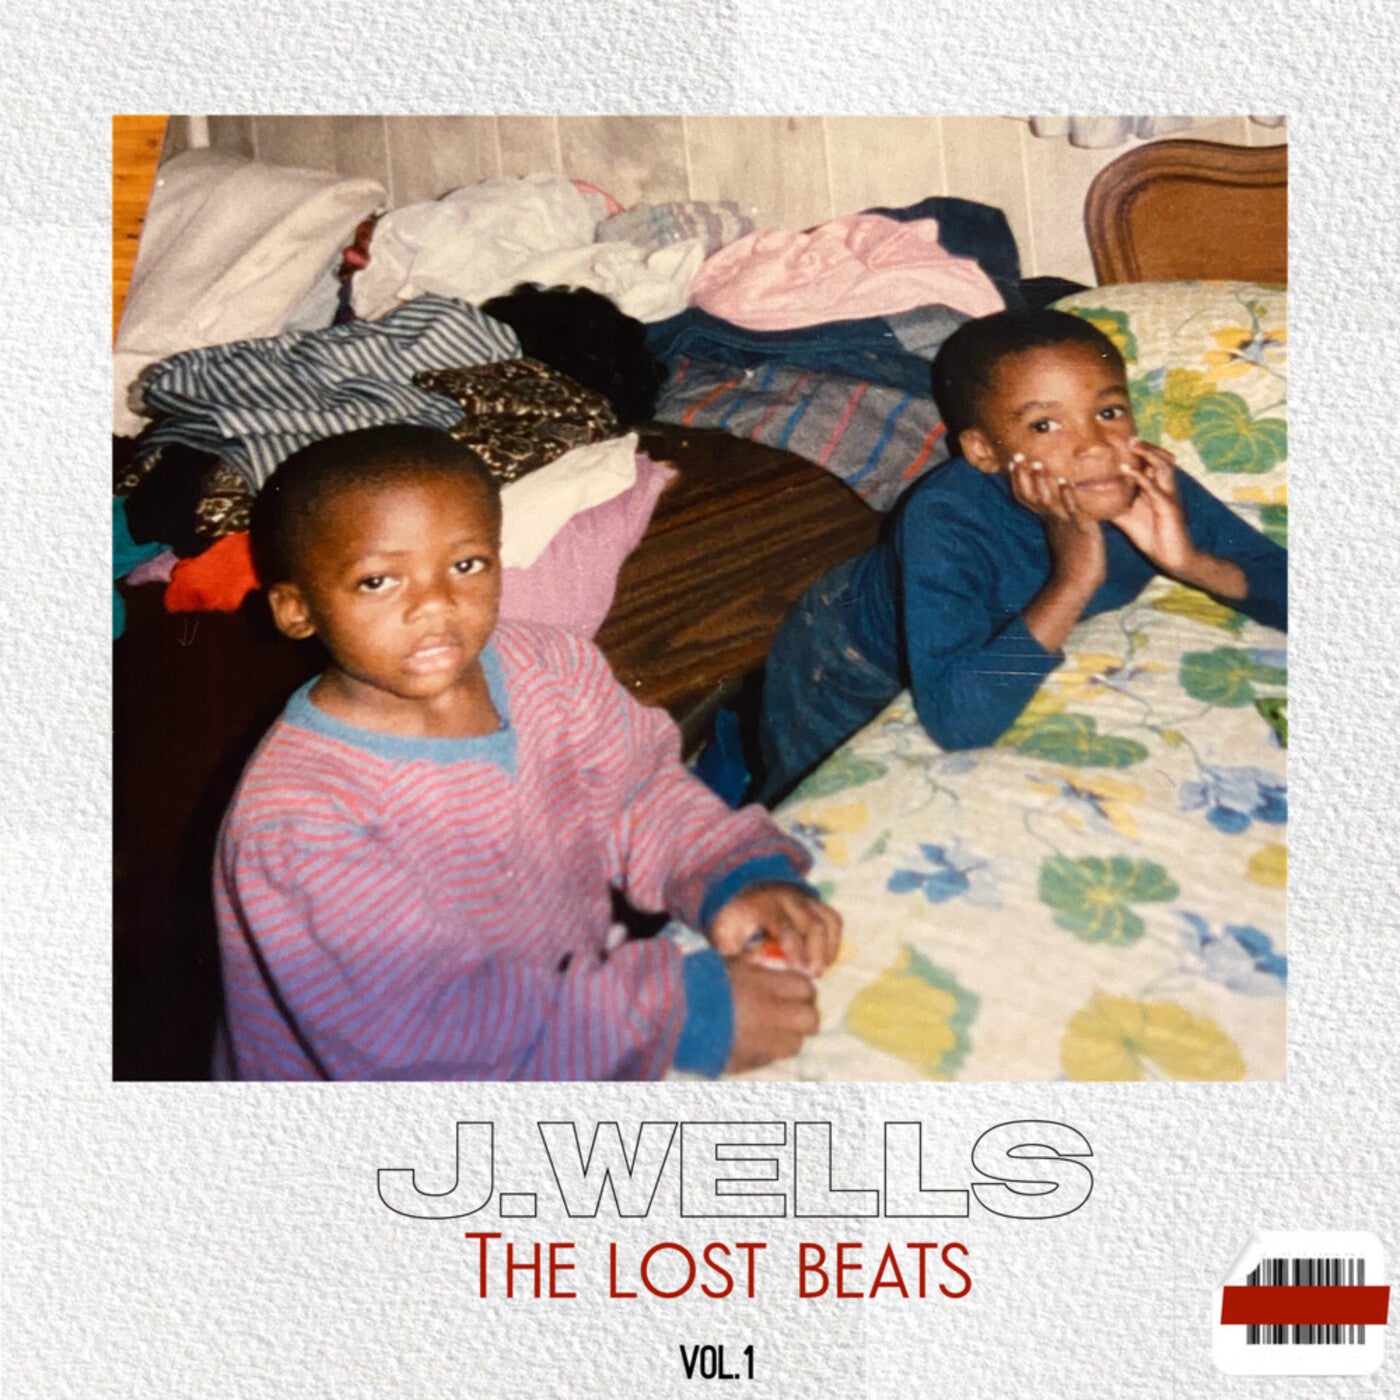 The Lost Beats Vol 1 Album